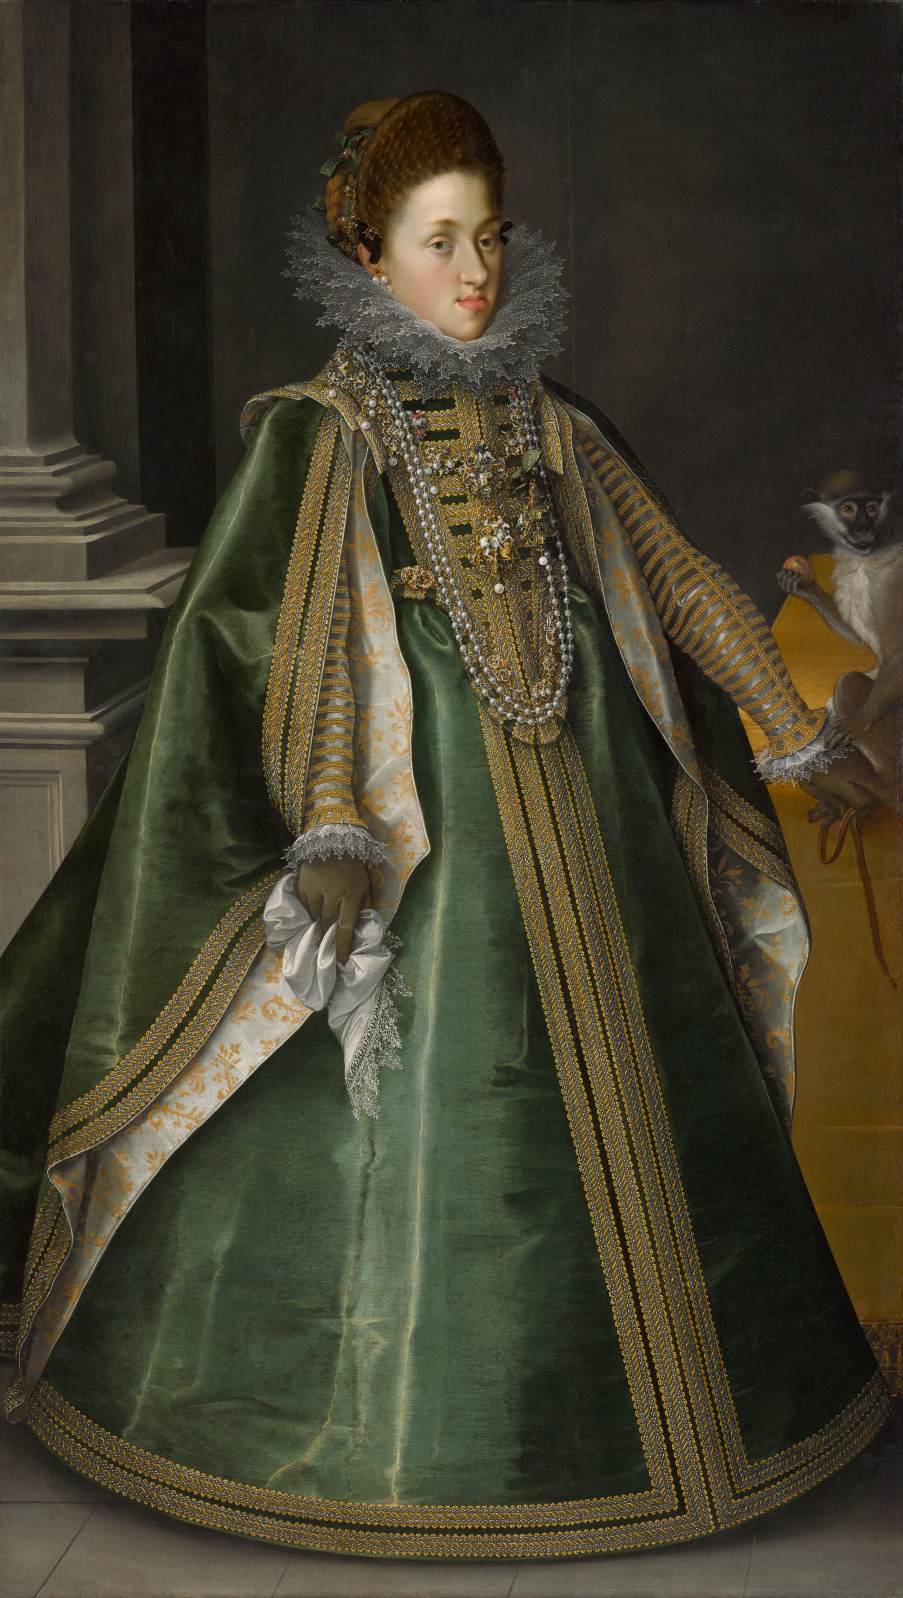 Konstanze von Habsburg, Archduquess of Center of Austria